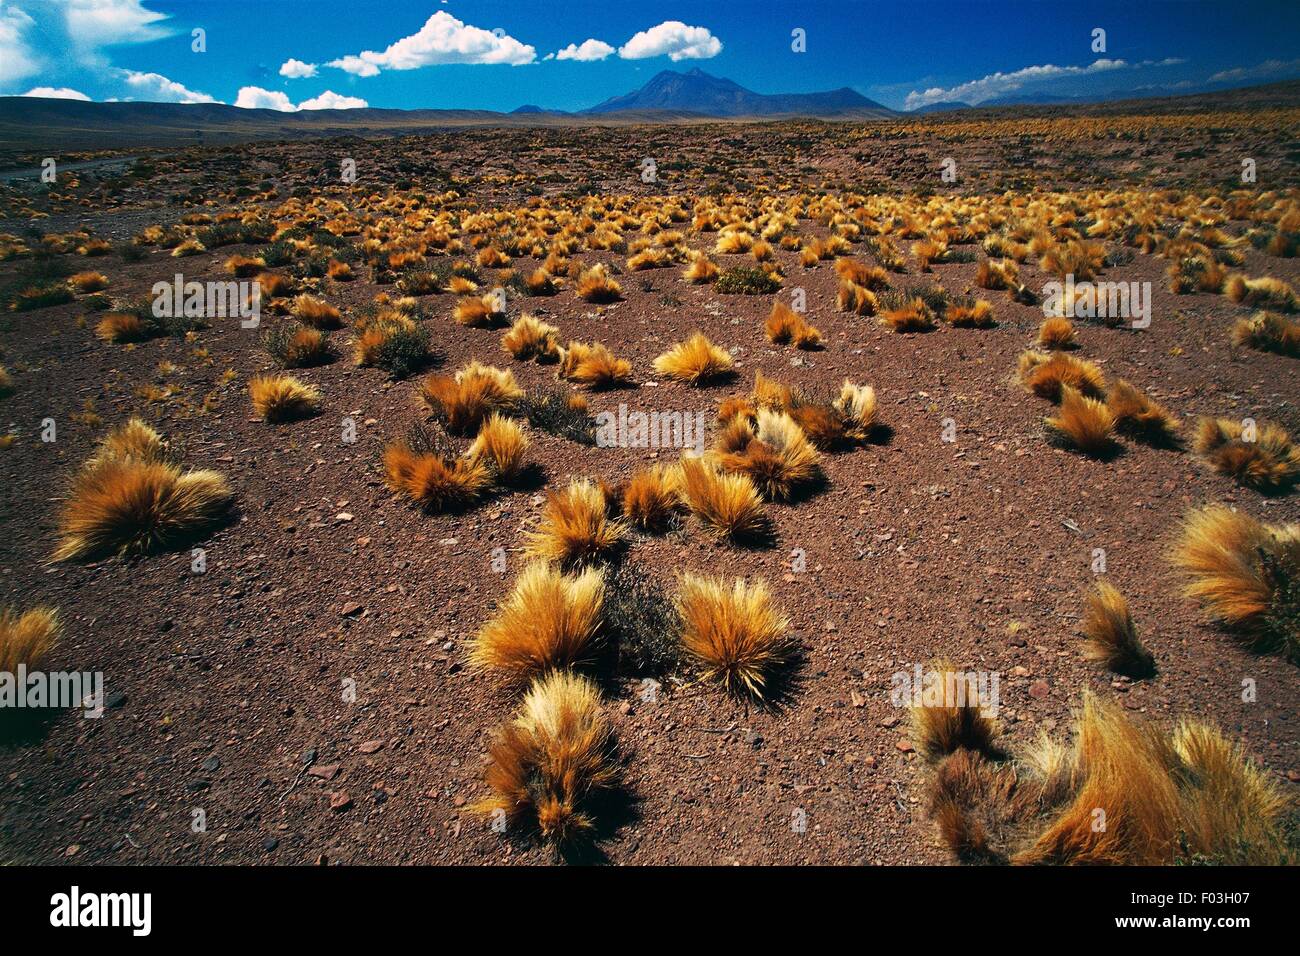 Coiron bushes (Festuca pallescens), with the Cordon de Puntas Negras in the  background, Atacama Desert, Antofagasta Region, Chile Stock Photo - Alamy